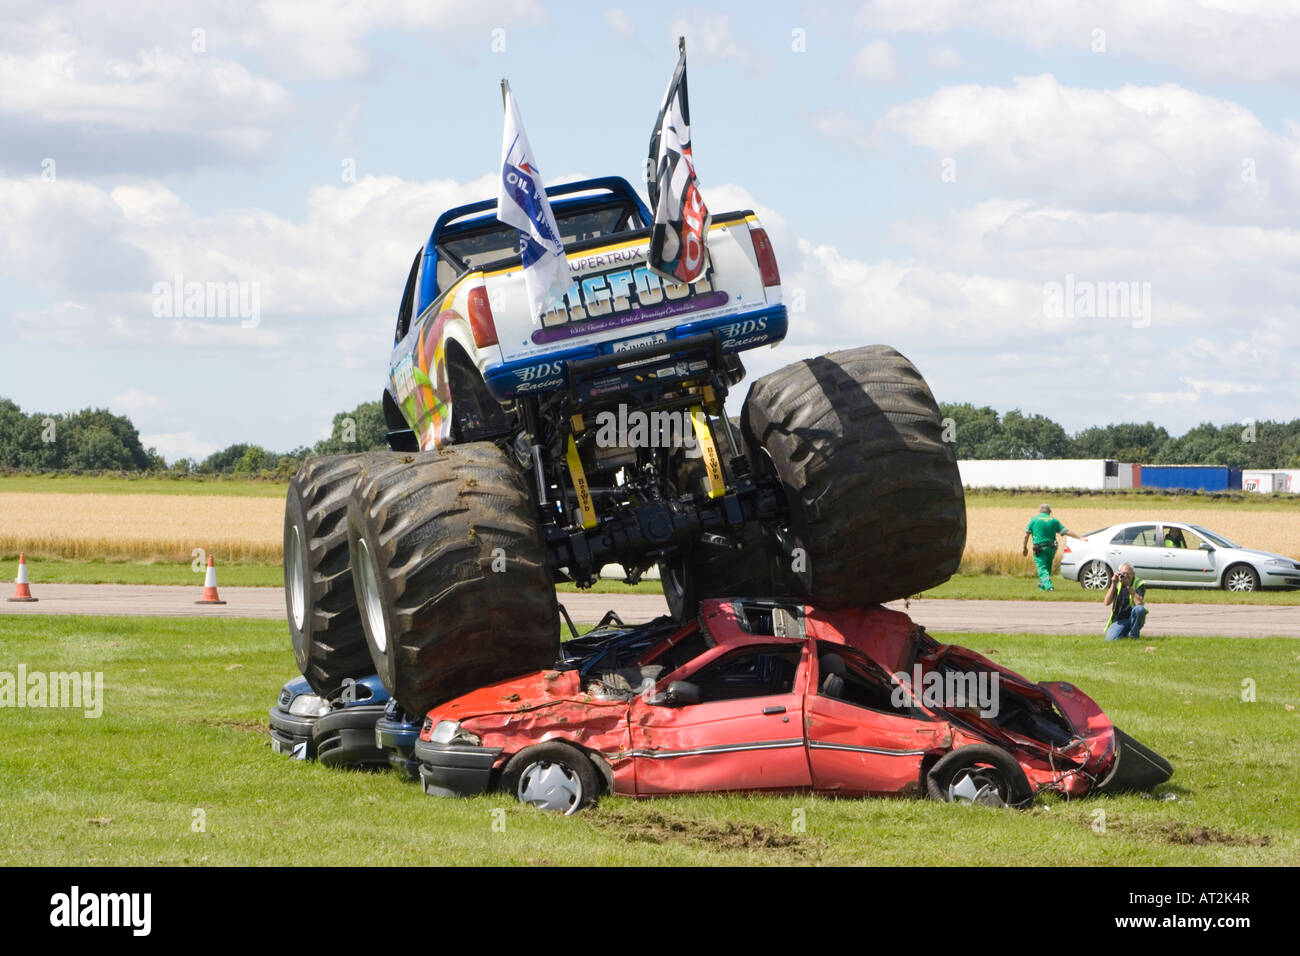 Bigfoot monster truck en action conduite sur des voitures Photo Stock -  Alamy